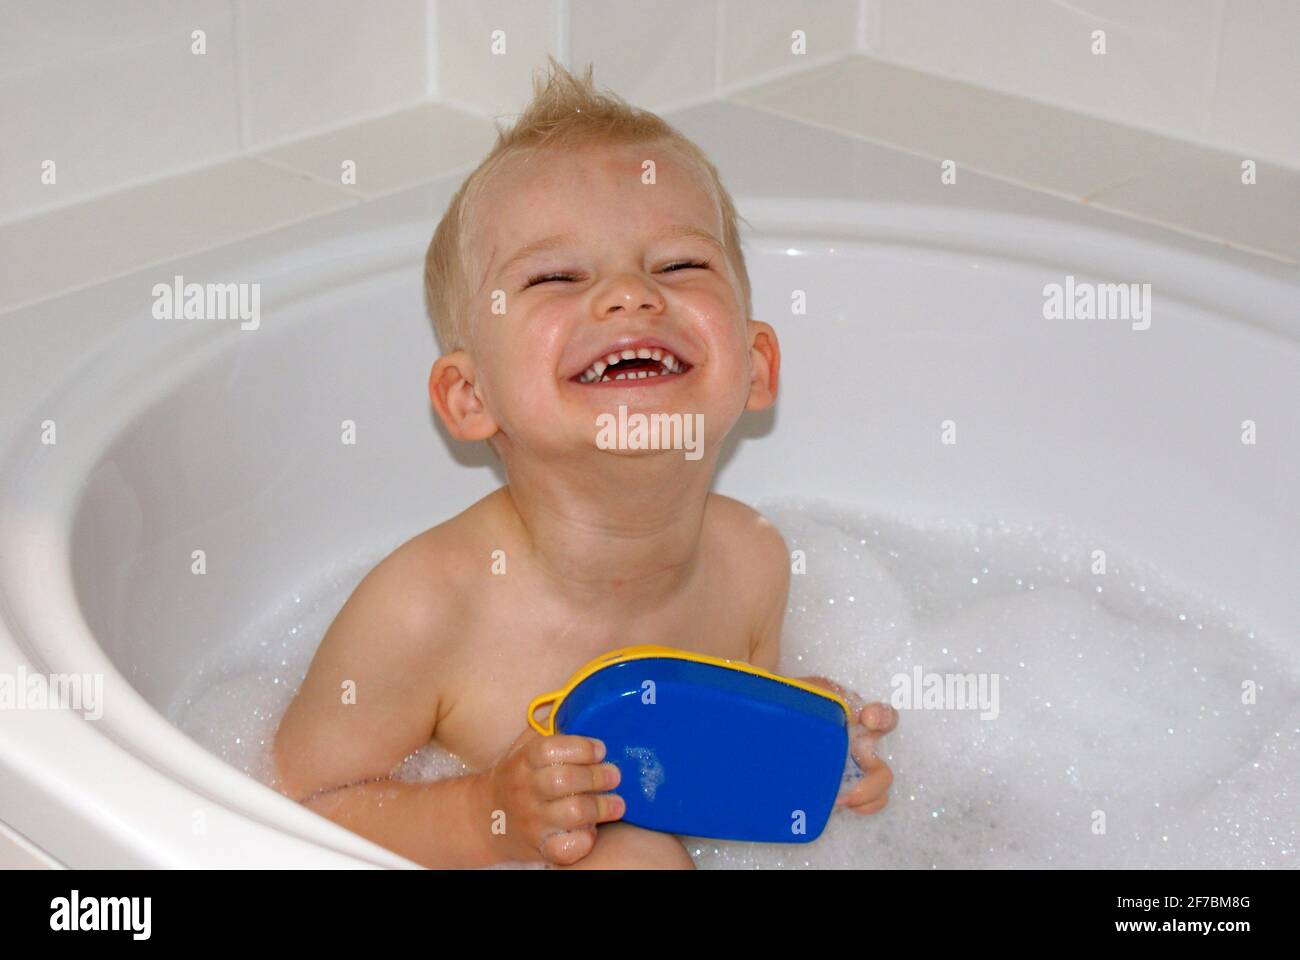 three years old boy sitting in a bathtub Stock Photo